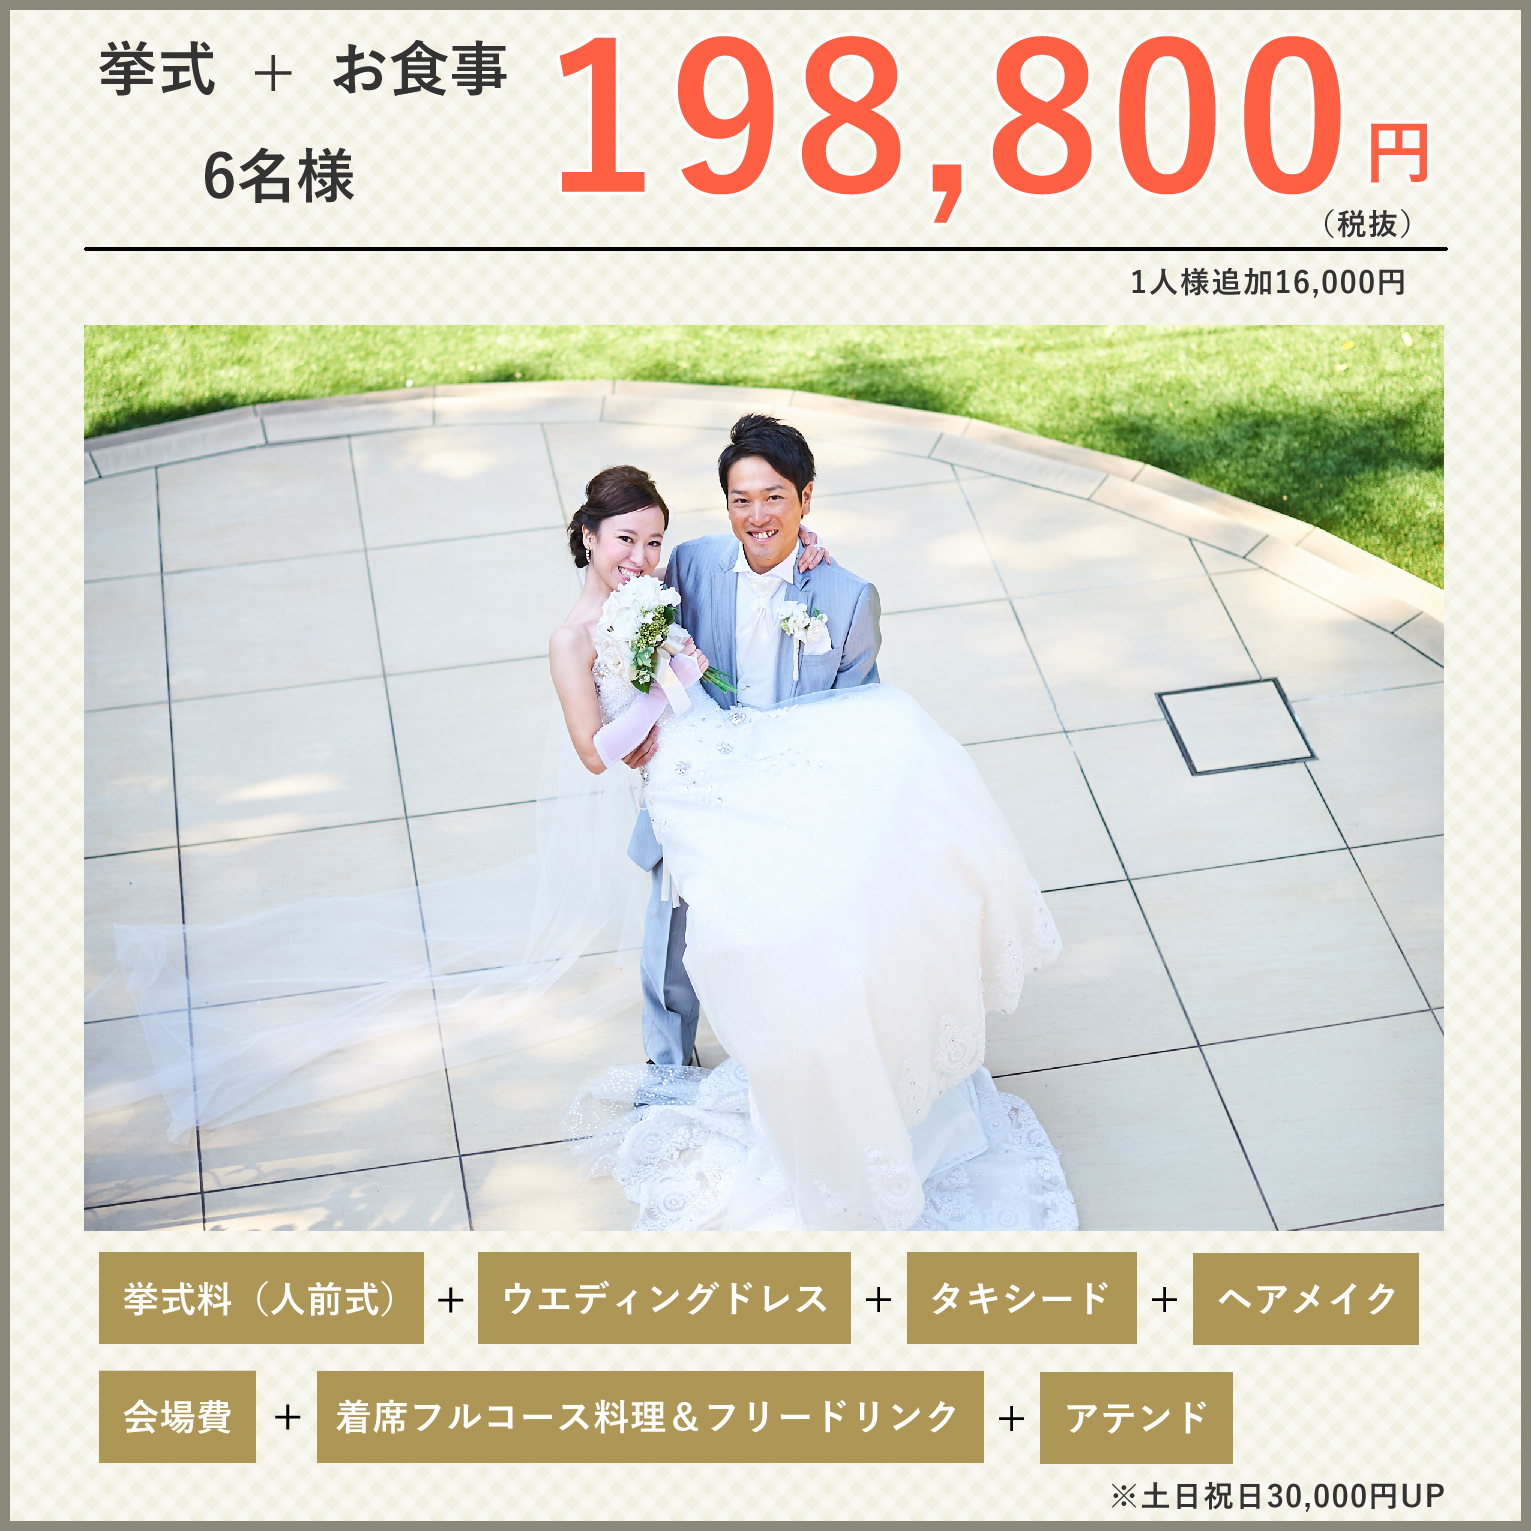 1 5次会 ウェディングパーティ 九州 熊本で結婚式 ウェディングパーティ ウェディングプロデュースならプリマ